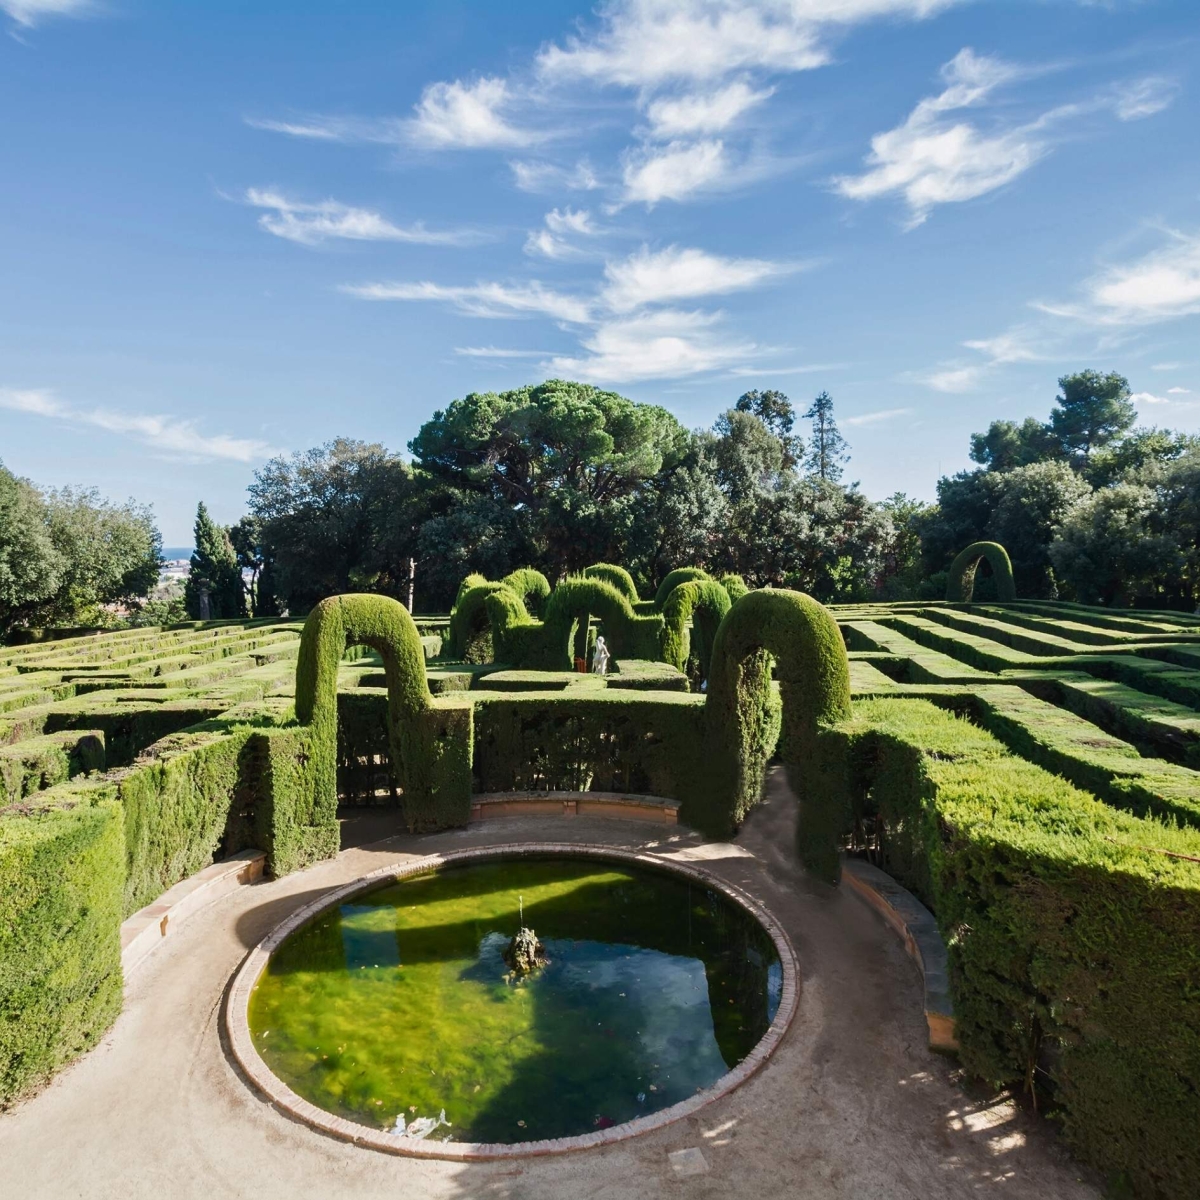 Le Parc Labyrinthe de Horta, parfois appelé Jardins Laberint Horta, est un jardin historique situé dans le quartier Horta-Guinardó de Barcelone, et le plus ancien du genre dans la ville.